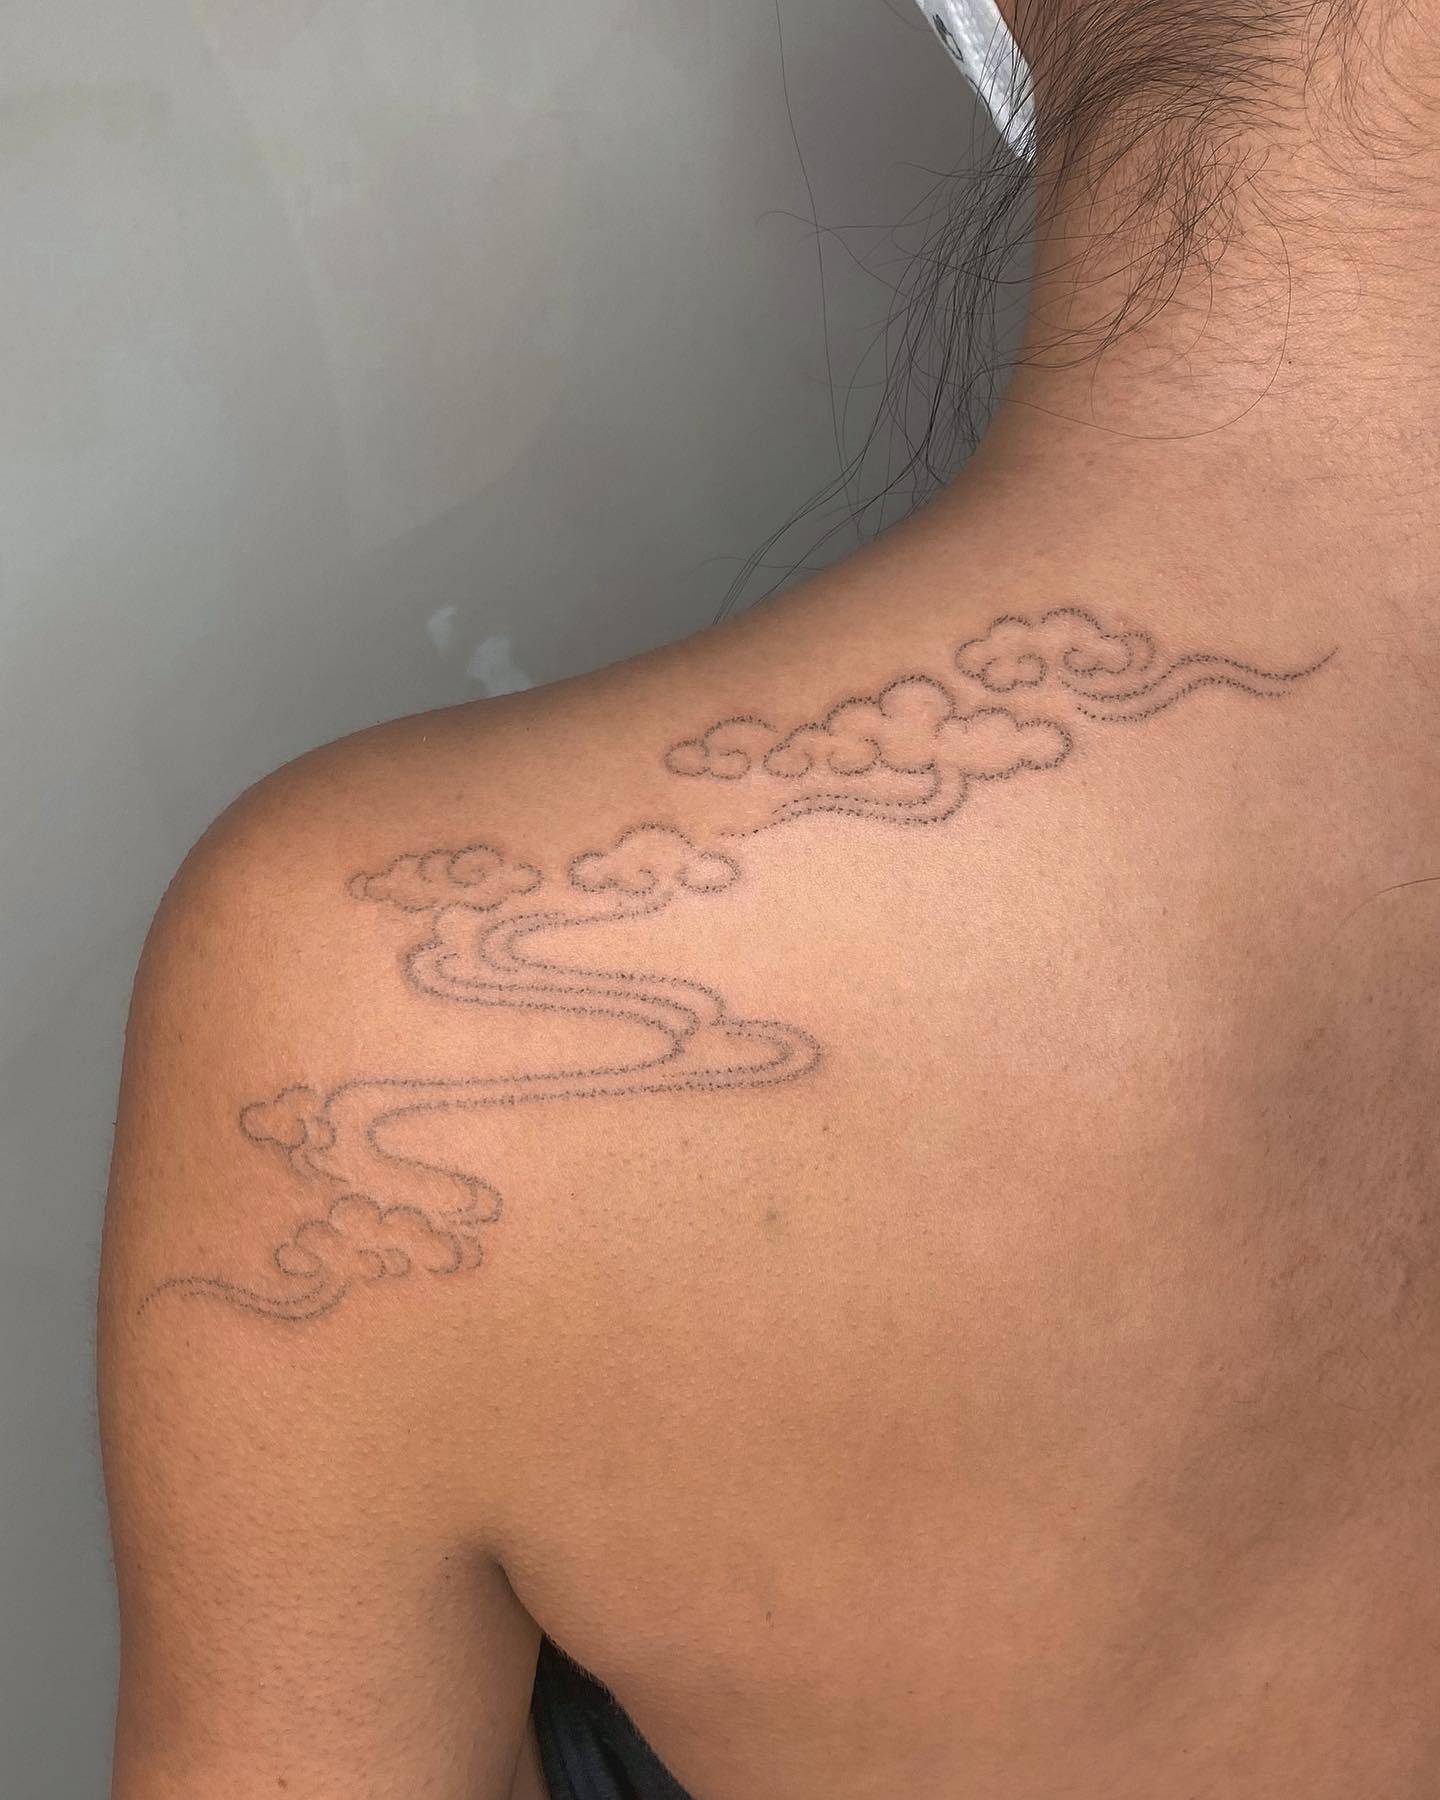 Tatuaje de nube pequeña en la espalda.